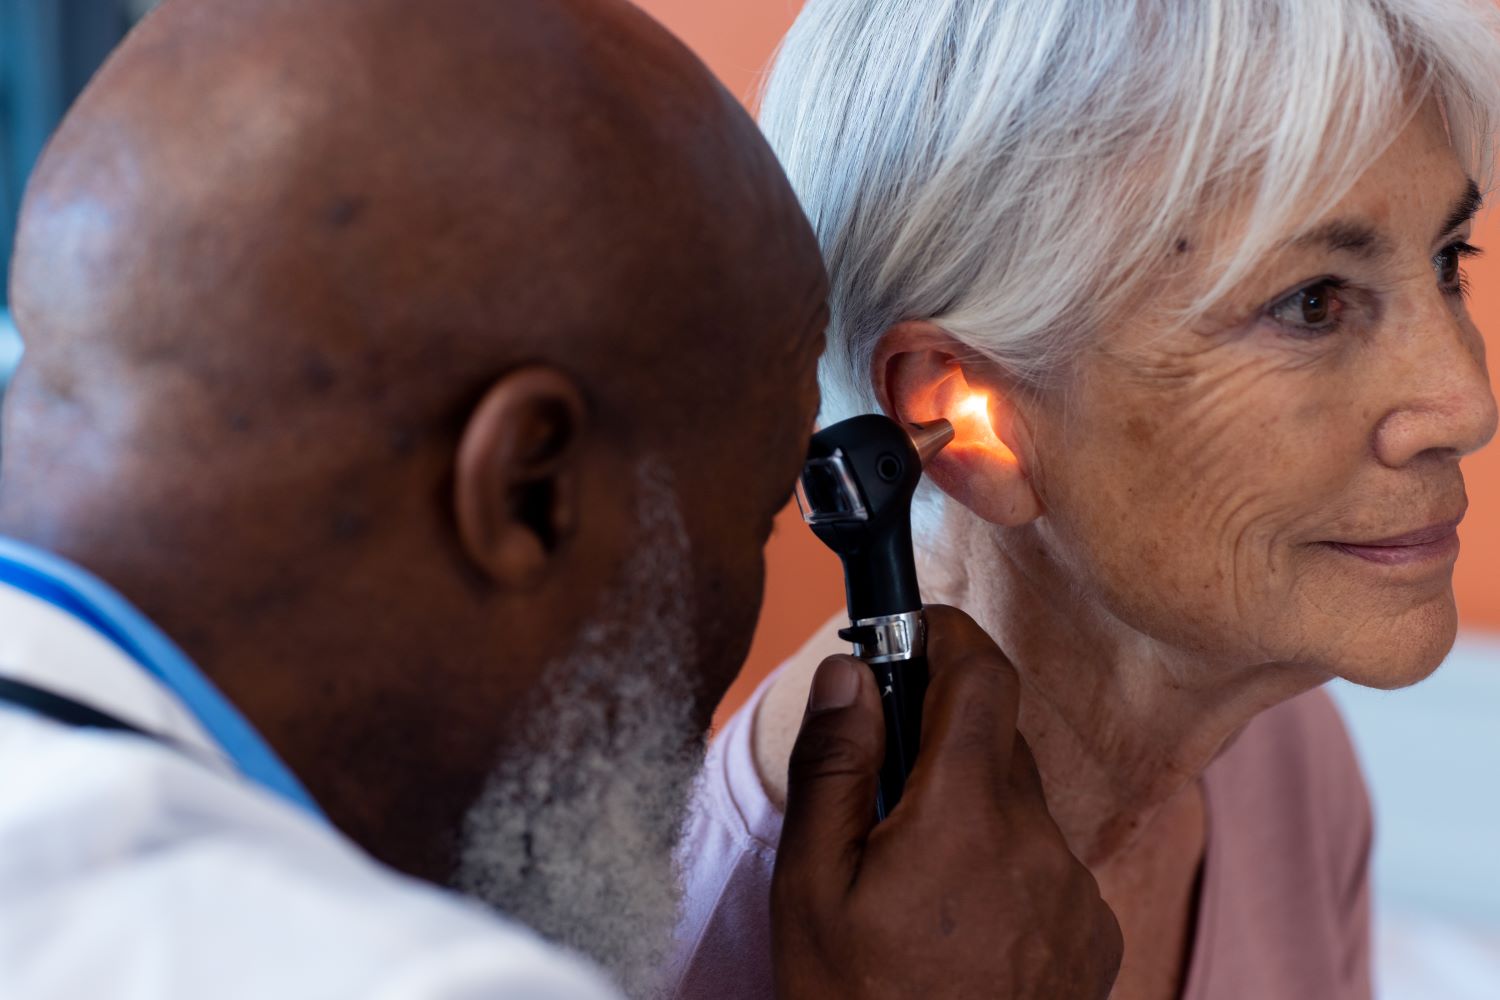 ทำความรู้จักกับหูหนวก หรือโรคหูหนวก โรคยอดฮิตในหมู่ผู้สูงวัย